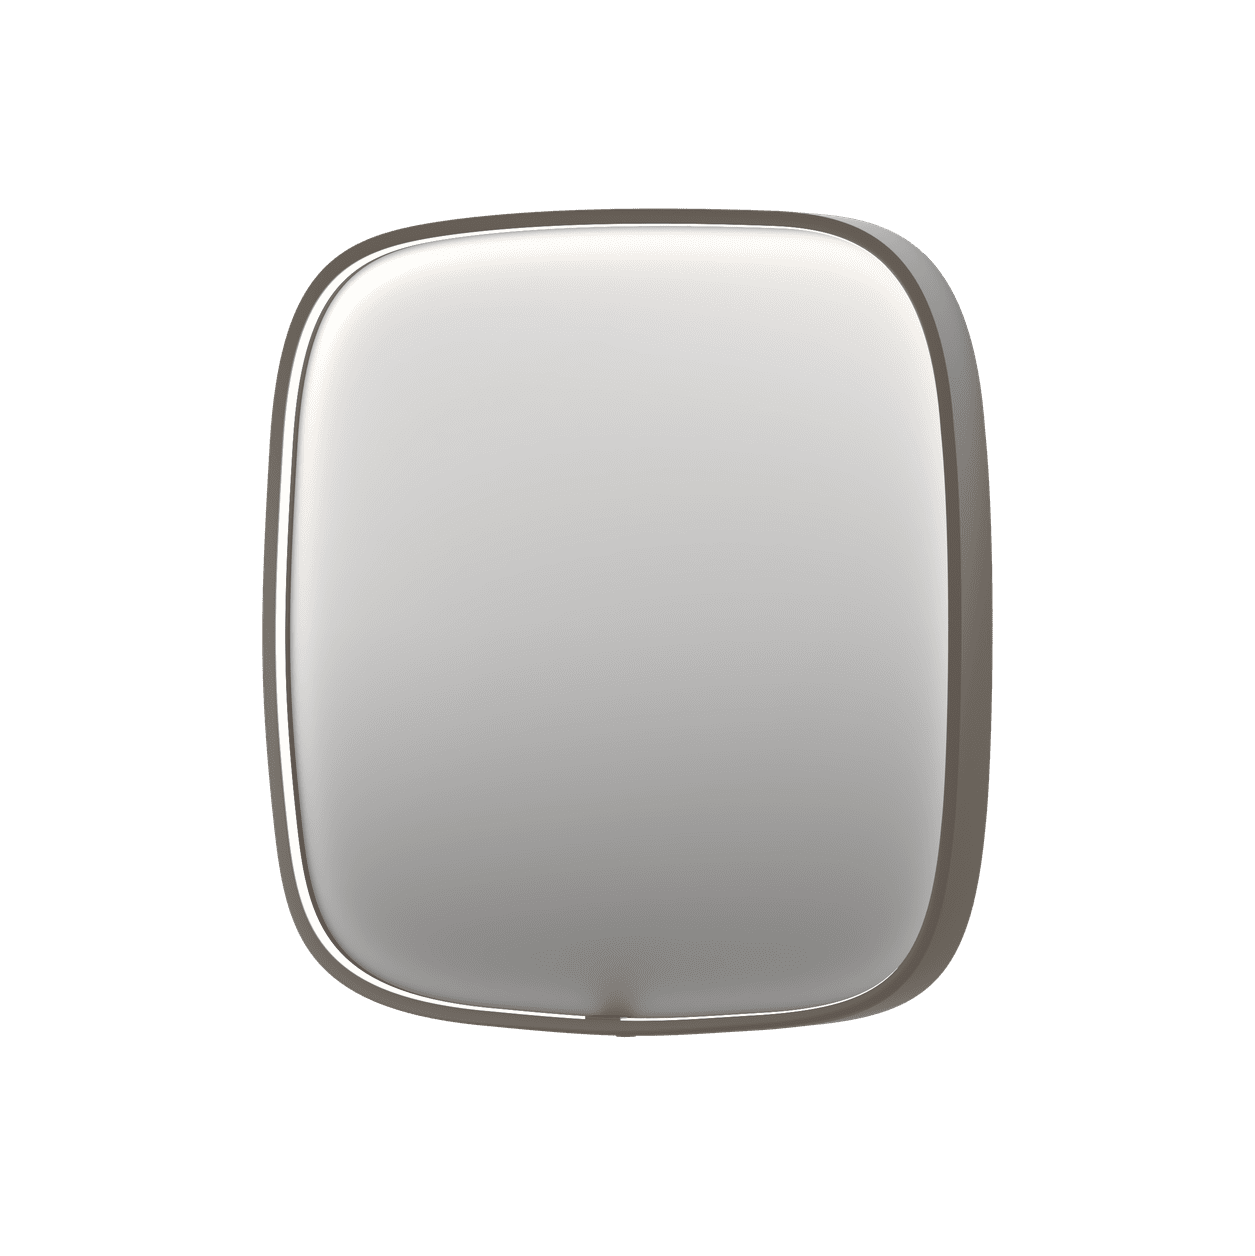 Billede af SP31 superellipse spejl med direkte LED i børstet rustfri stål - 60x4x60